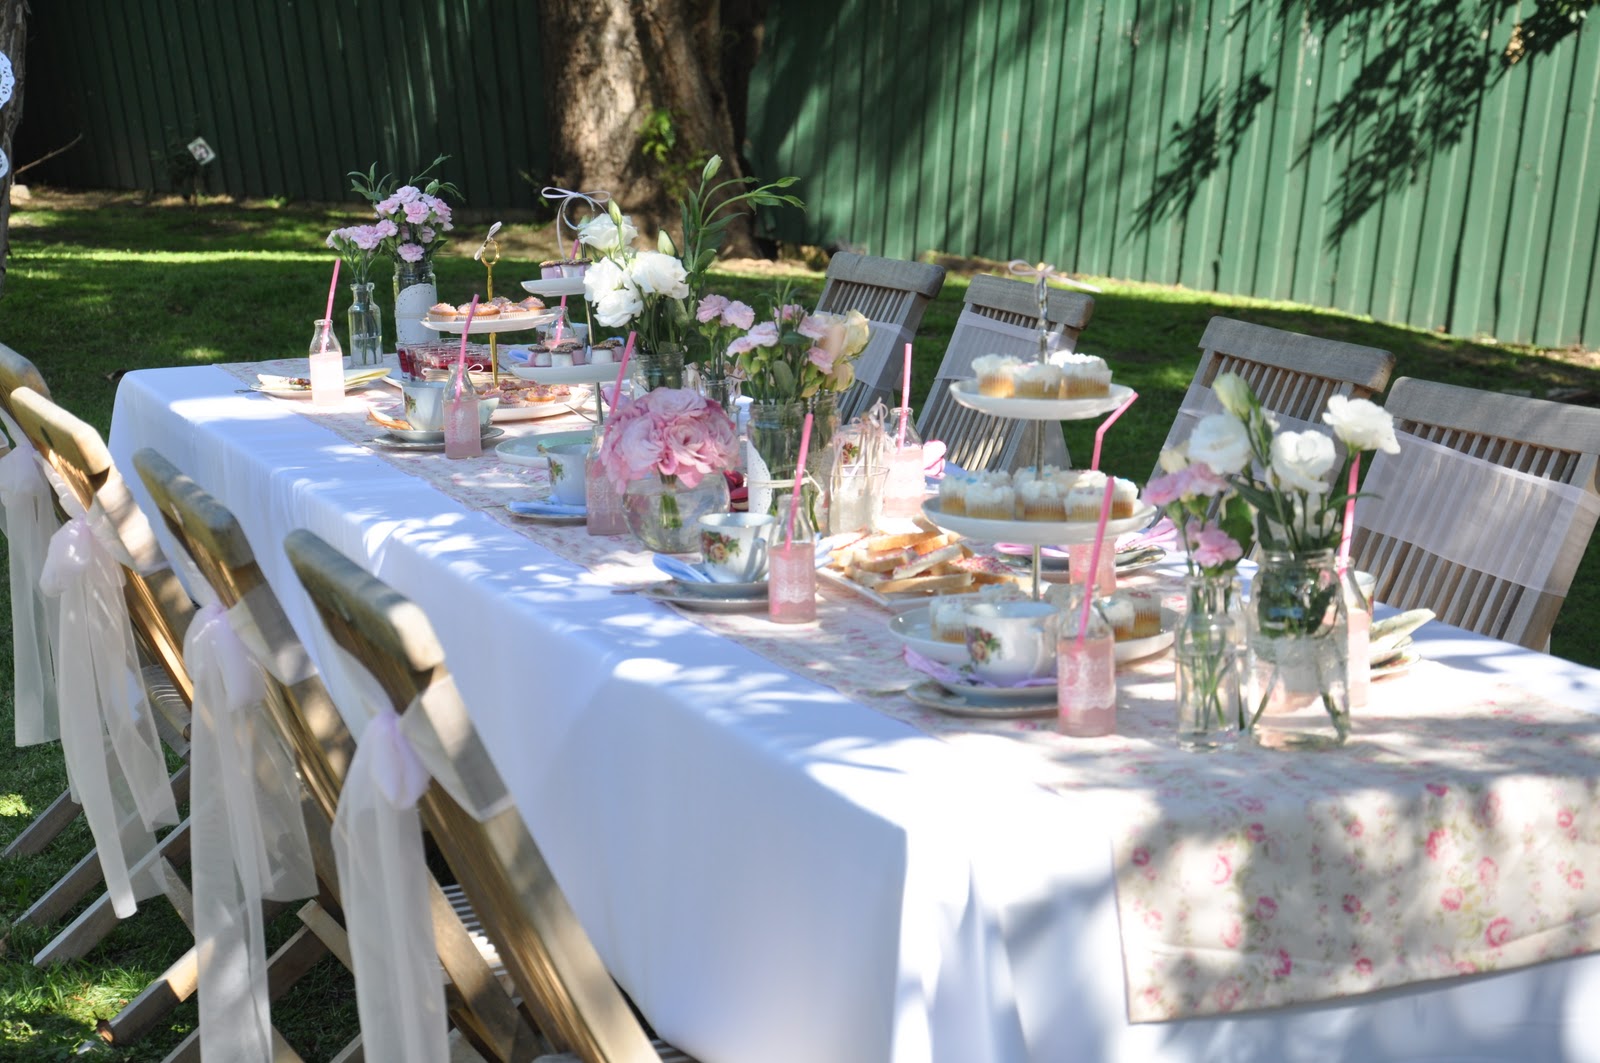 The Vintage Garden Tea Party - Asian Wedding Ideas {Summer Setting ...